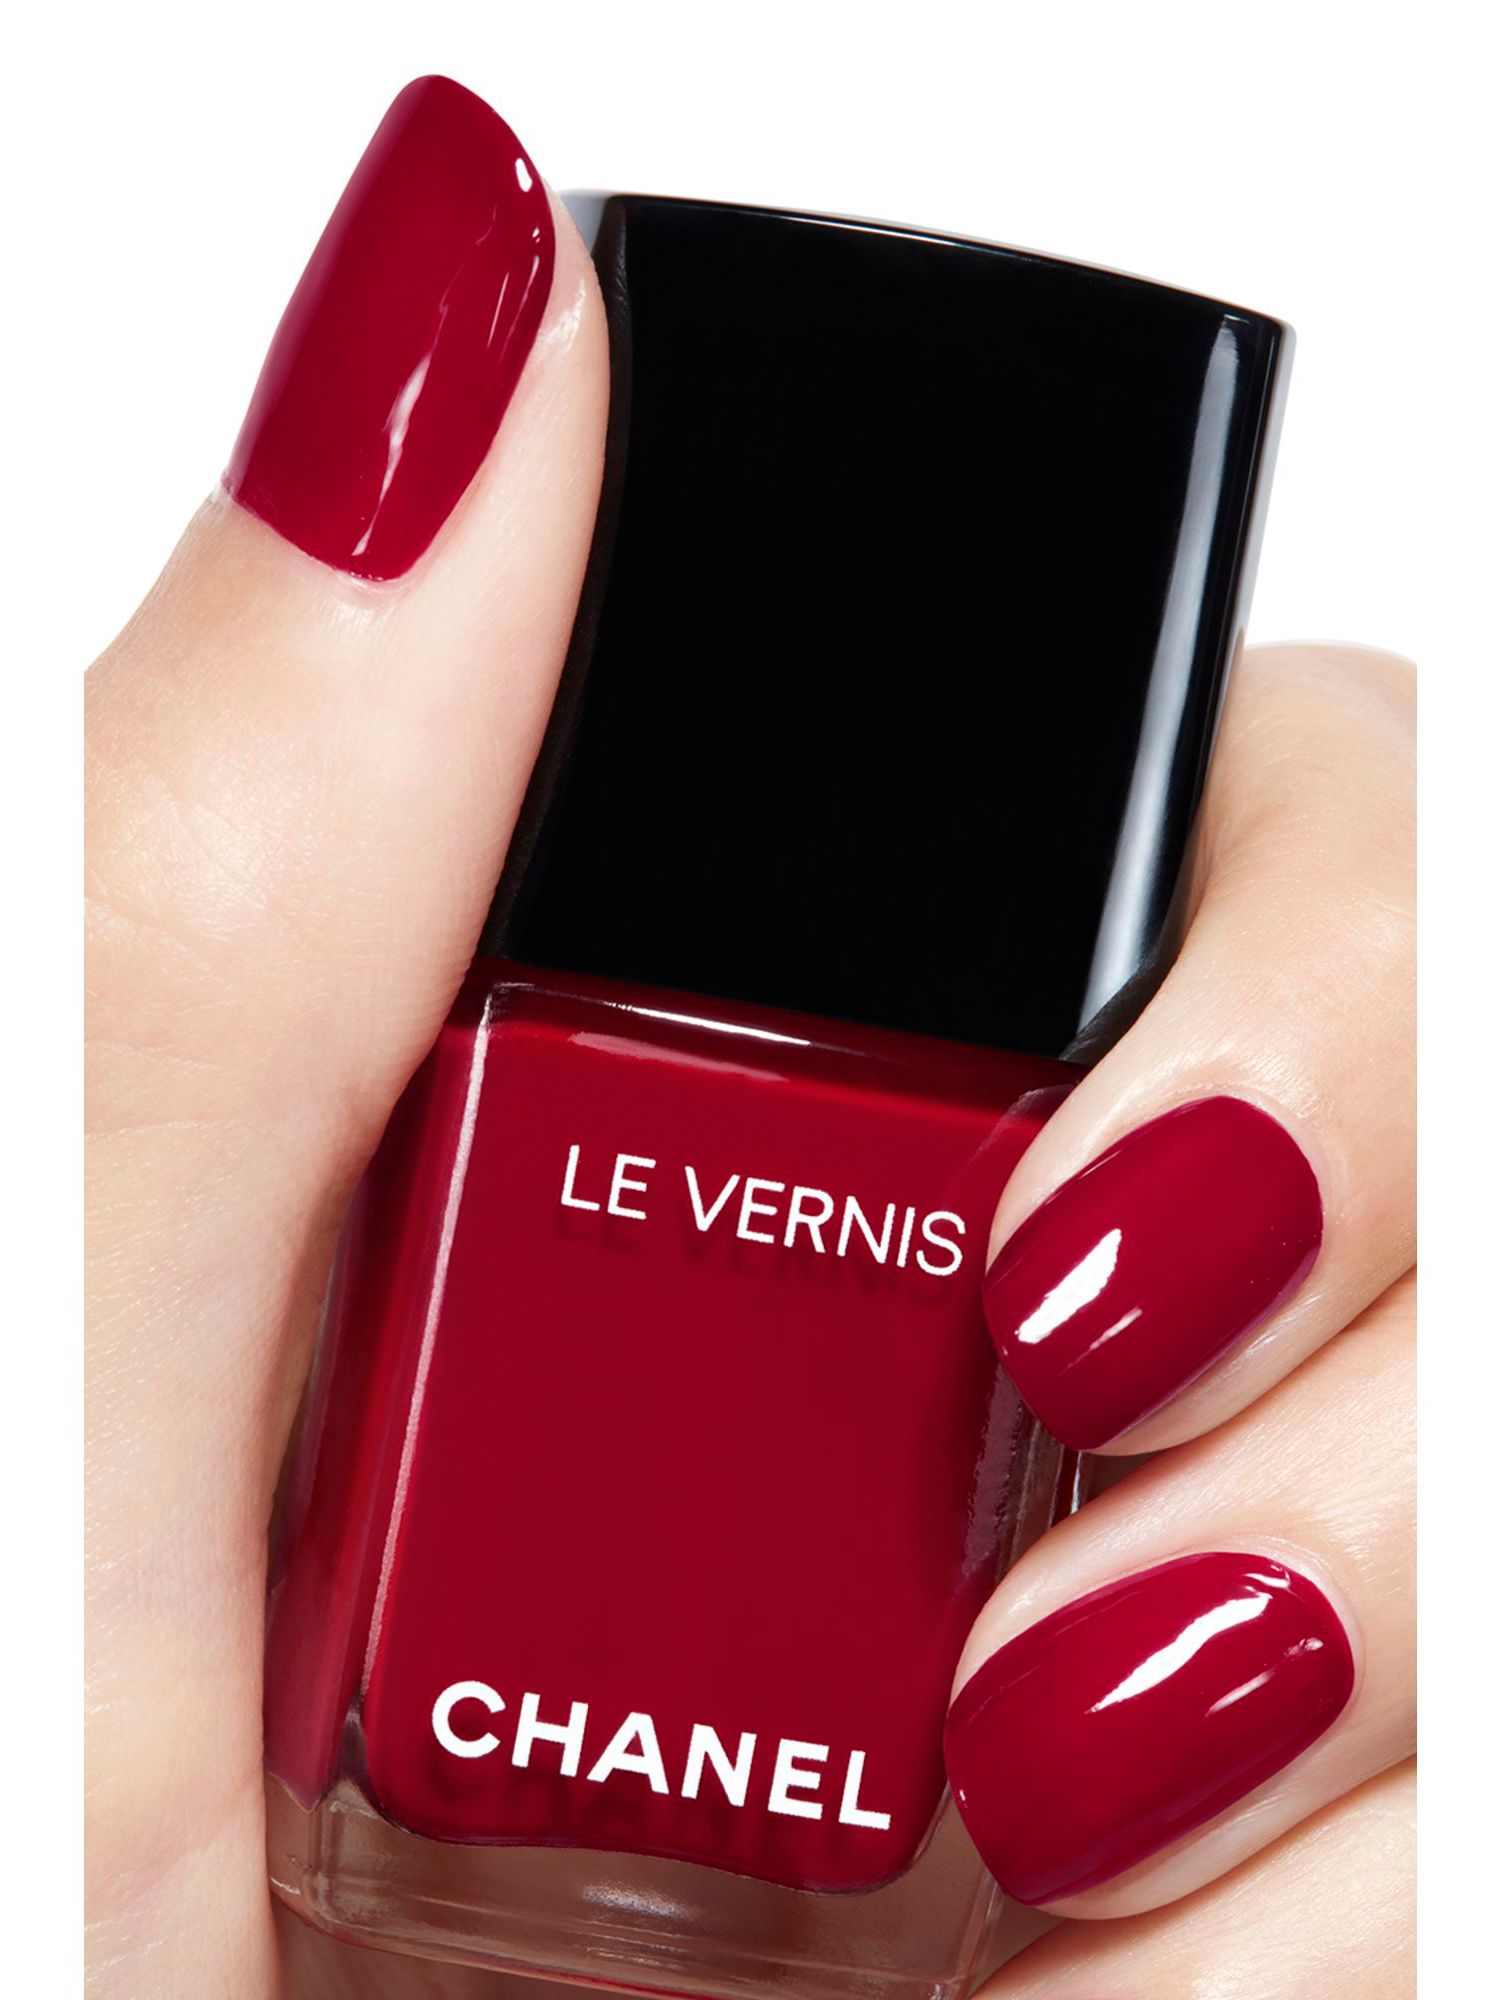 CHANEL Le Vernis Nail Colour, 155 Rouge Noir at John Lewis & Partners